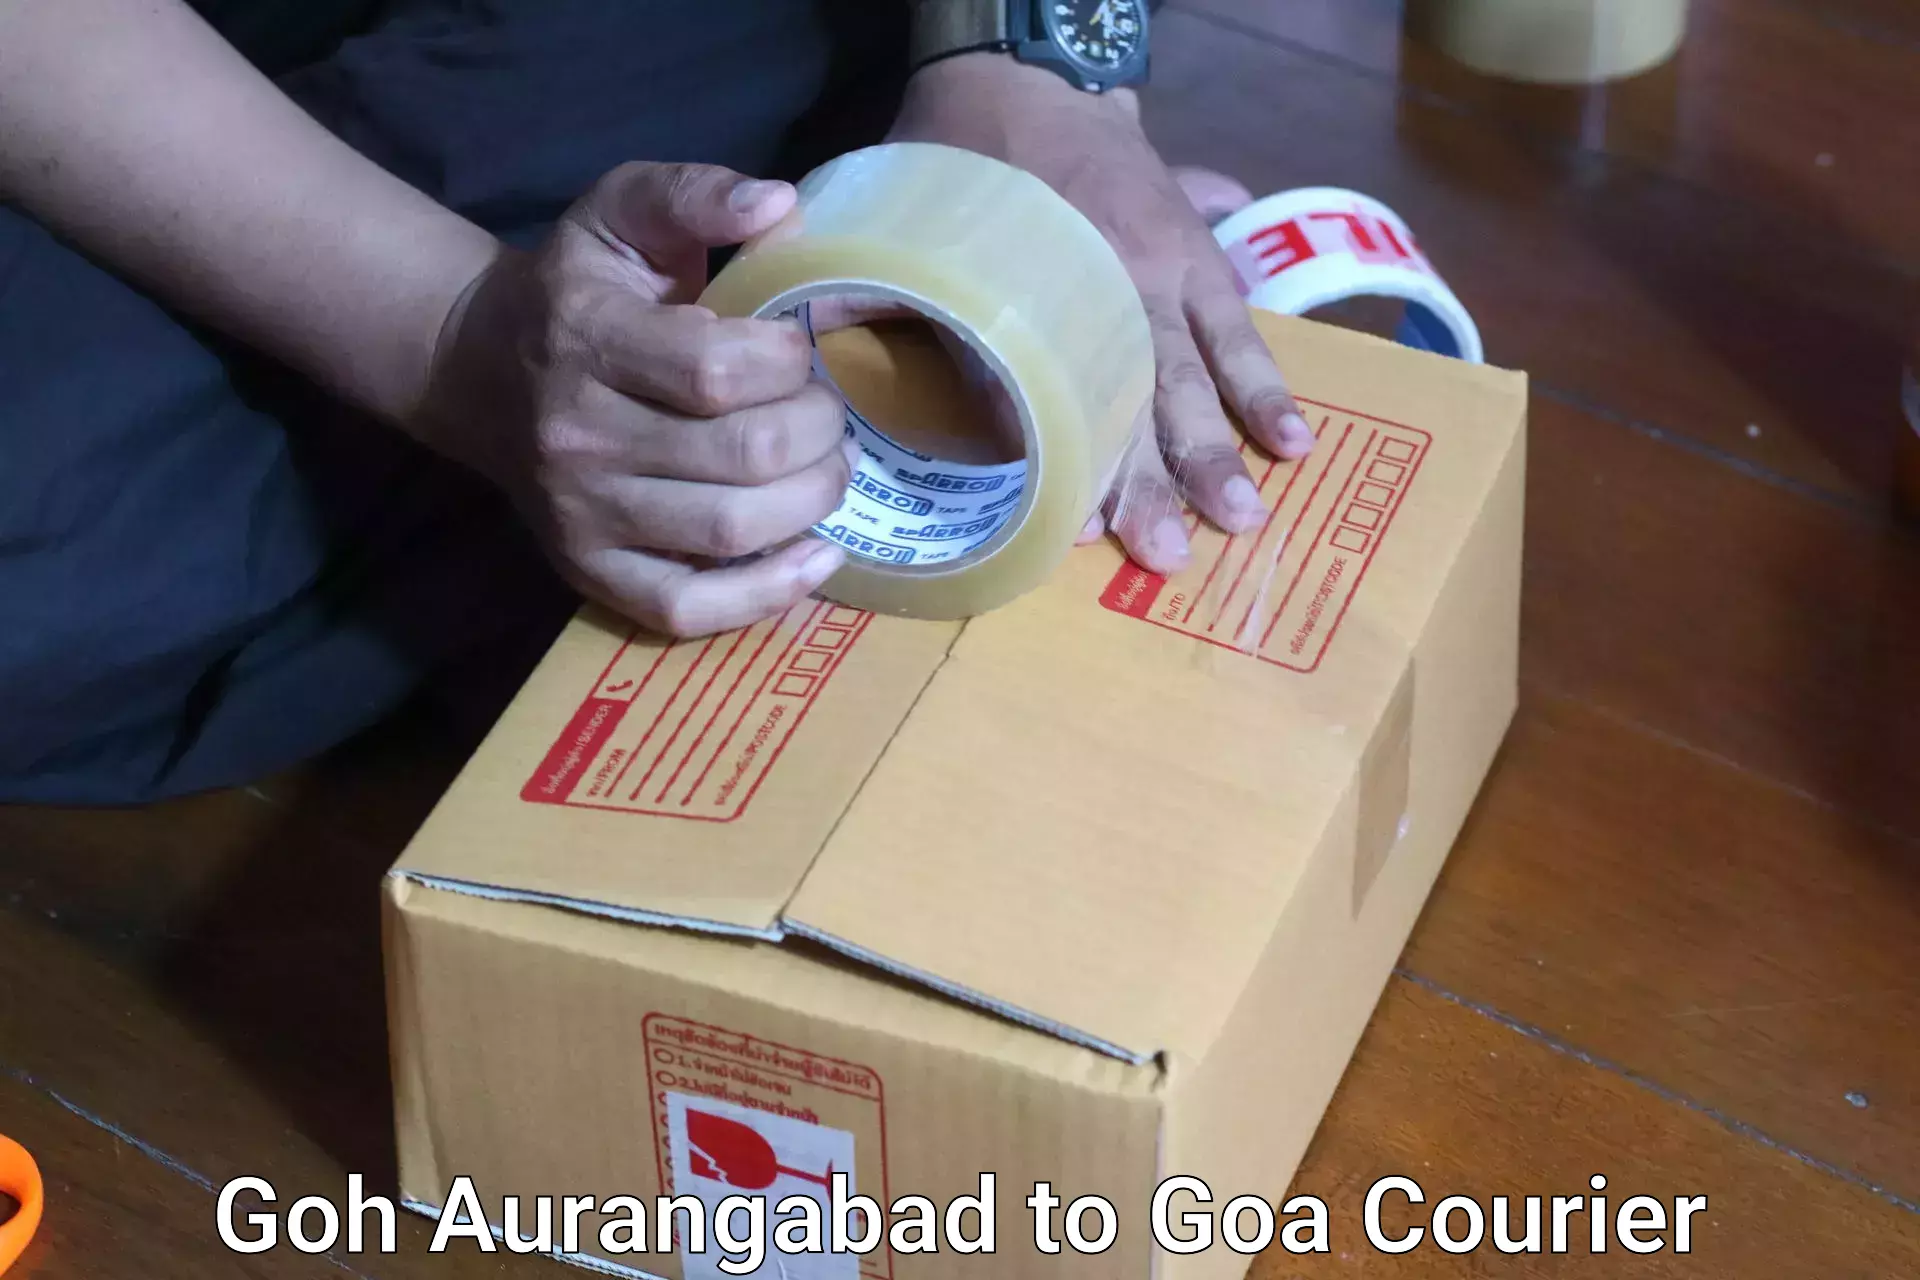 Luggage delivery system Goh Aurangabad to Goa University